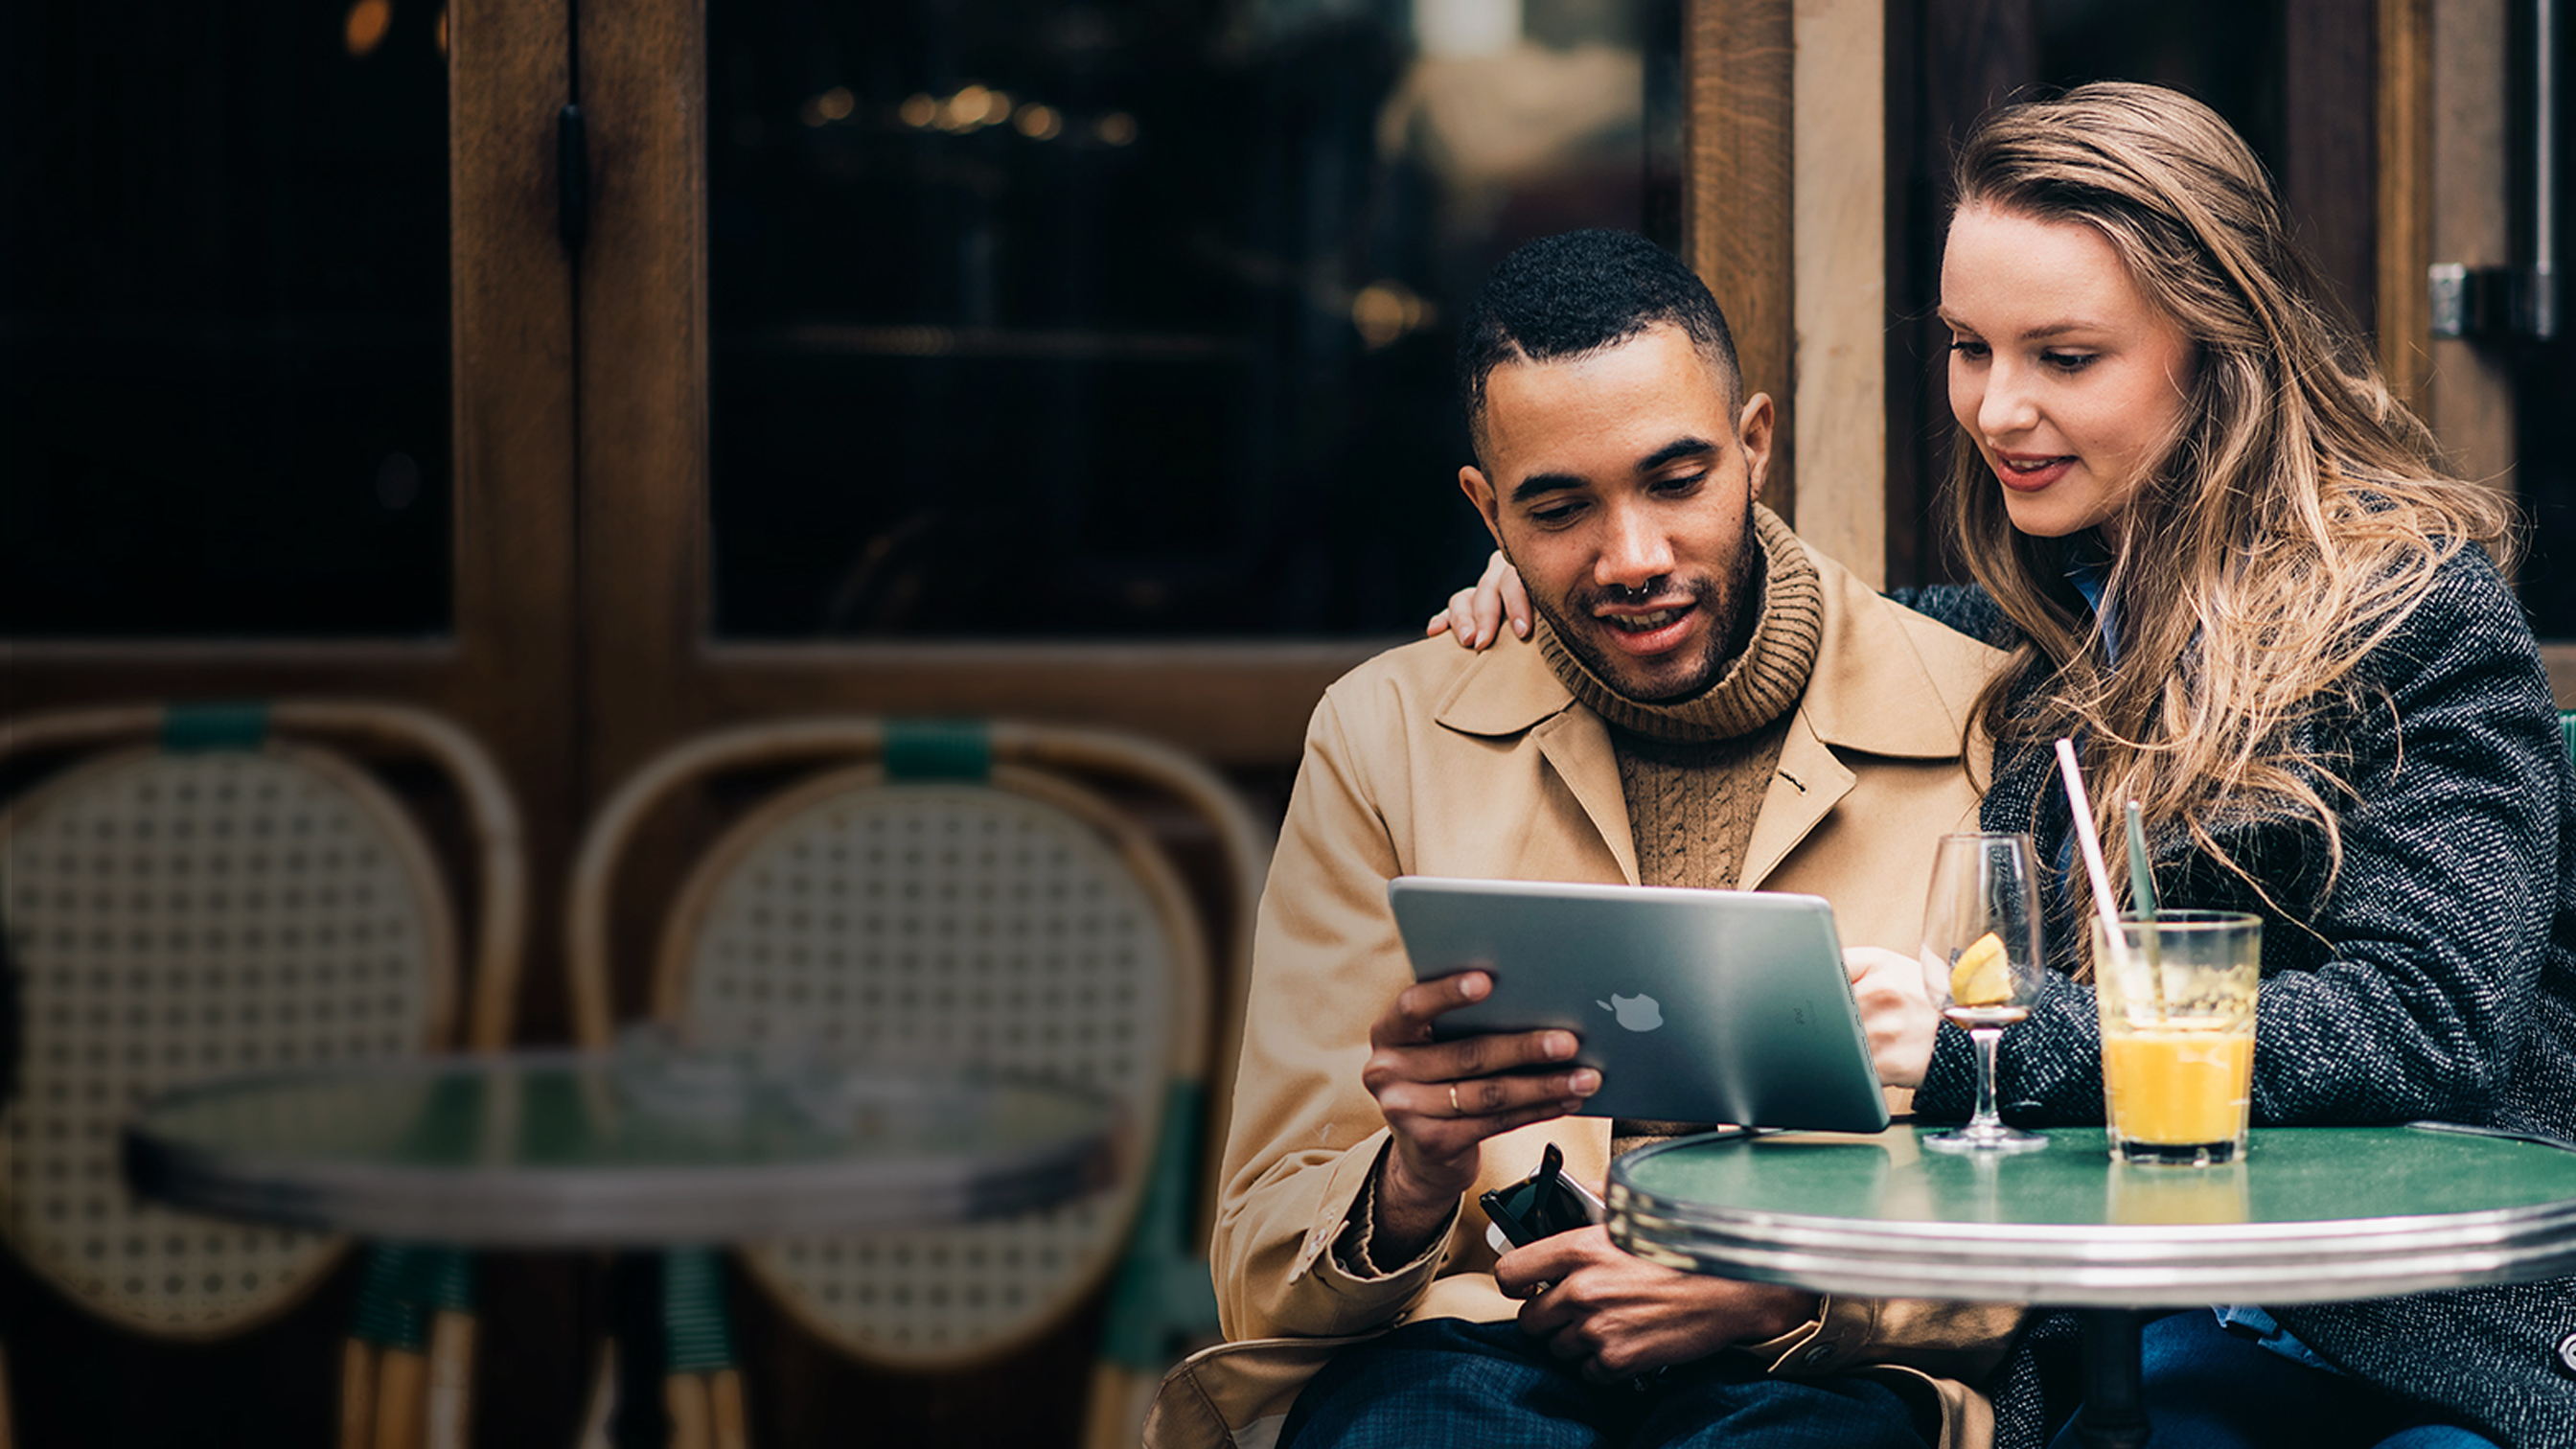 Zwei Personen sitzen in einem Café und schauen gemeinsam auf ein iPad.